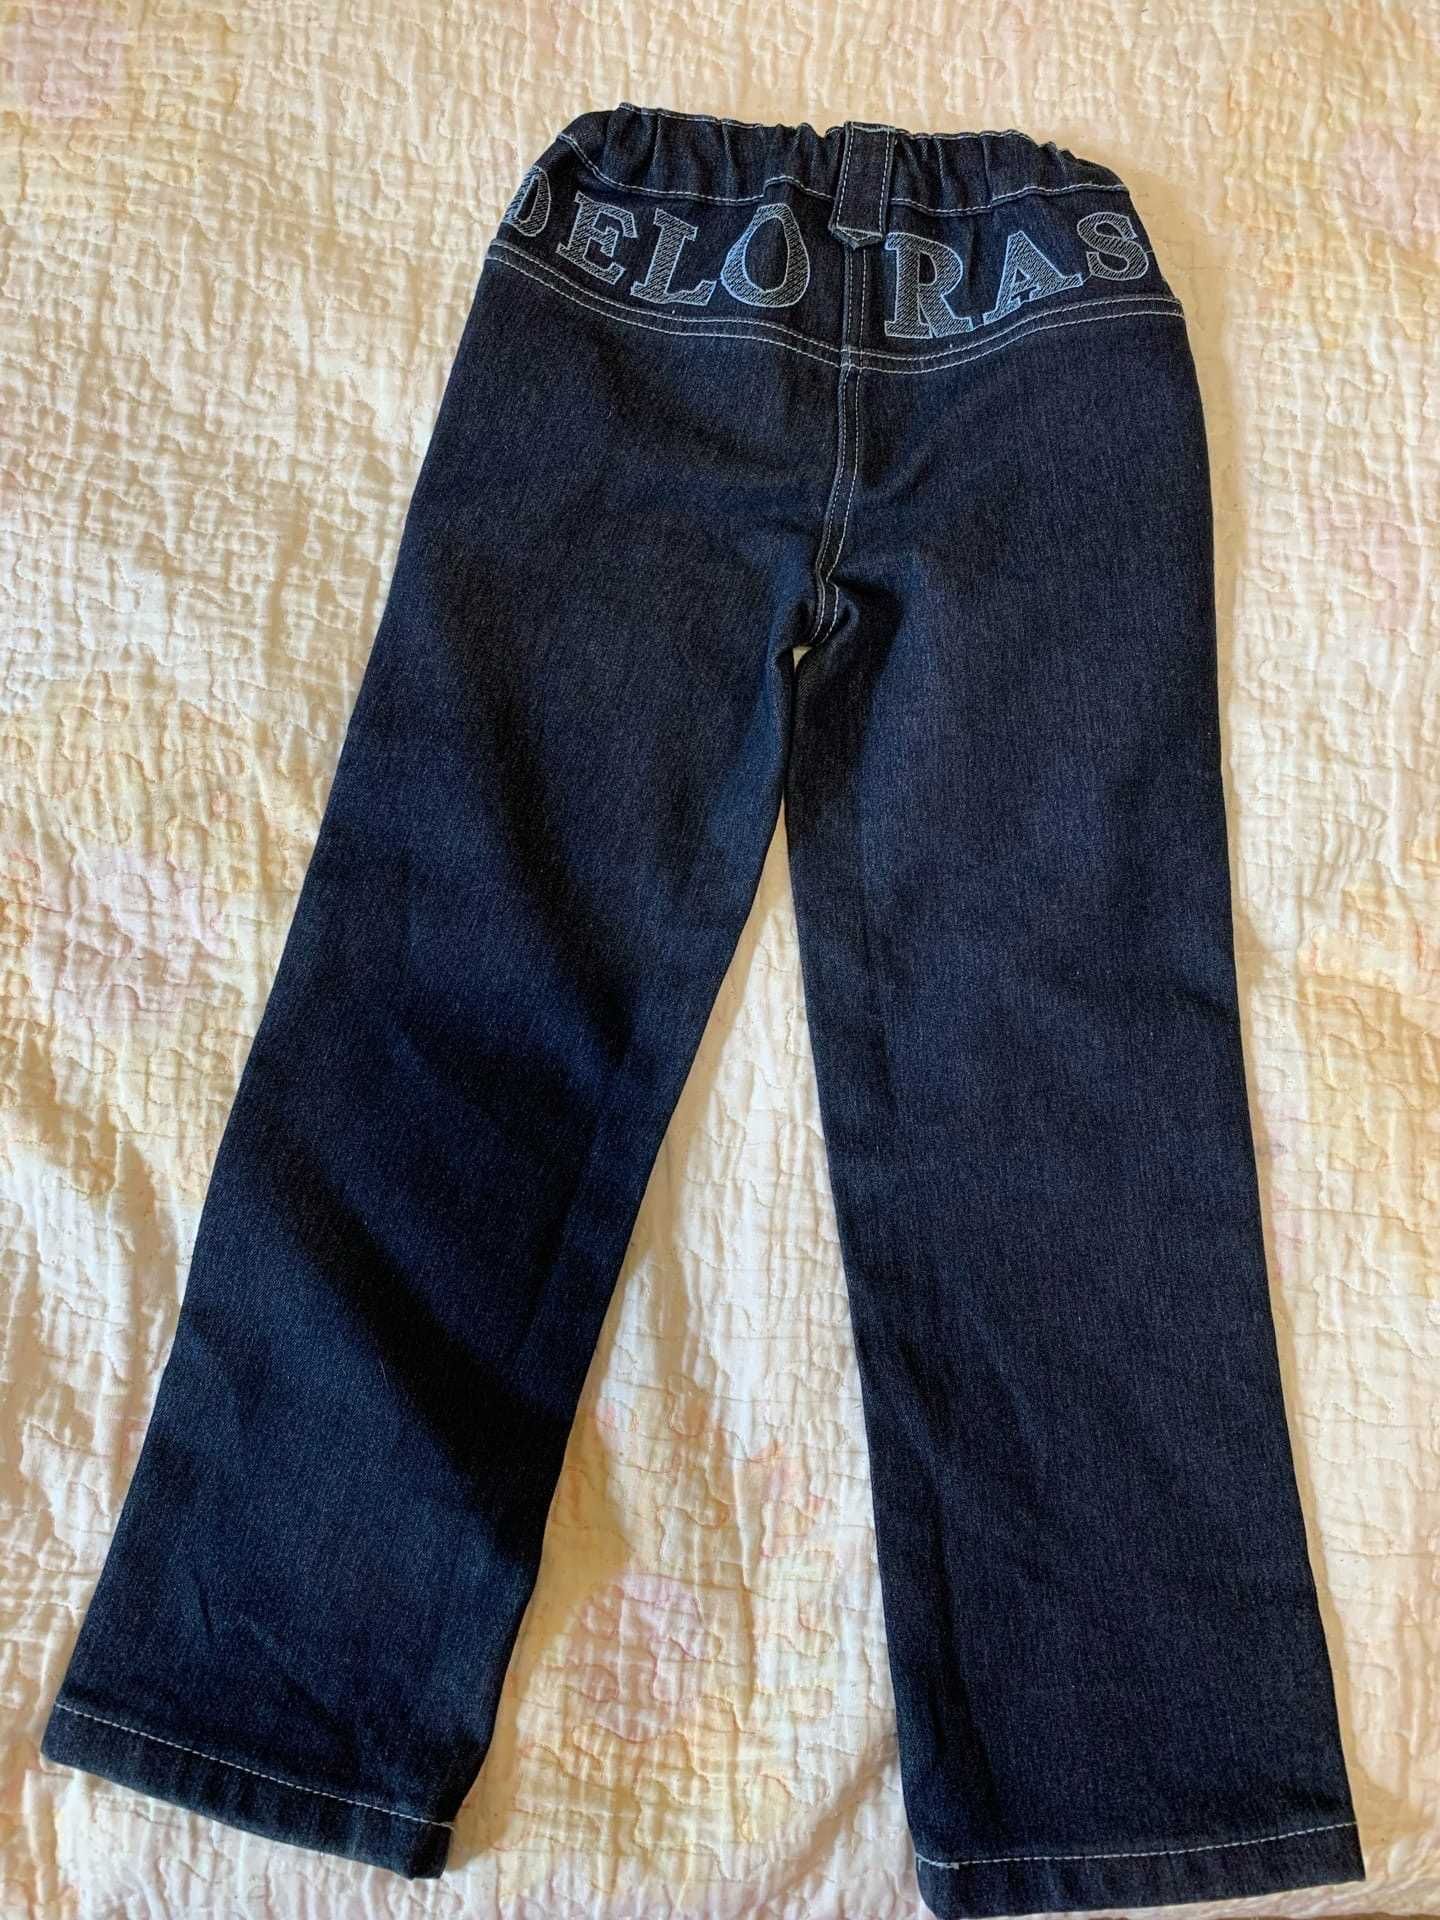 Продам джинсы для девочки